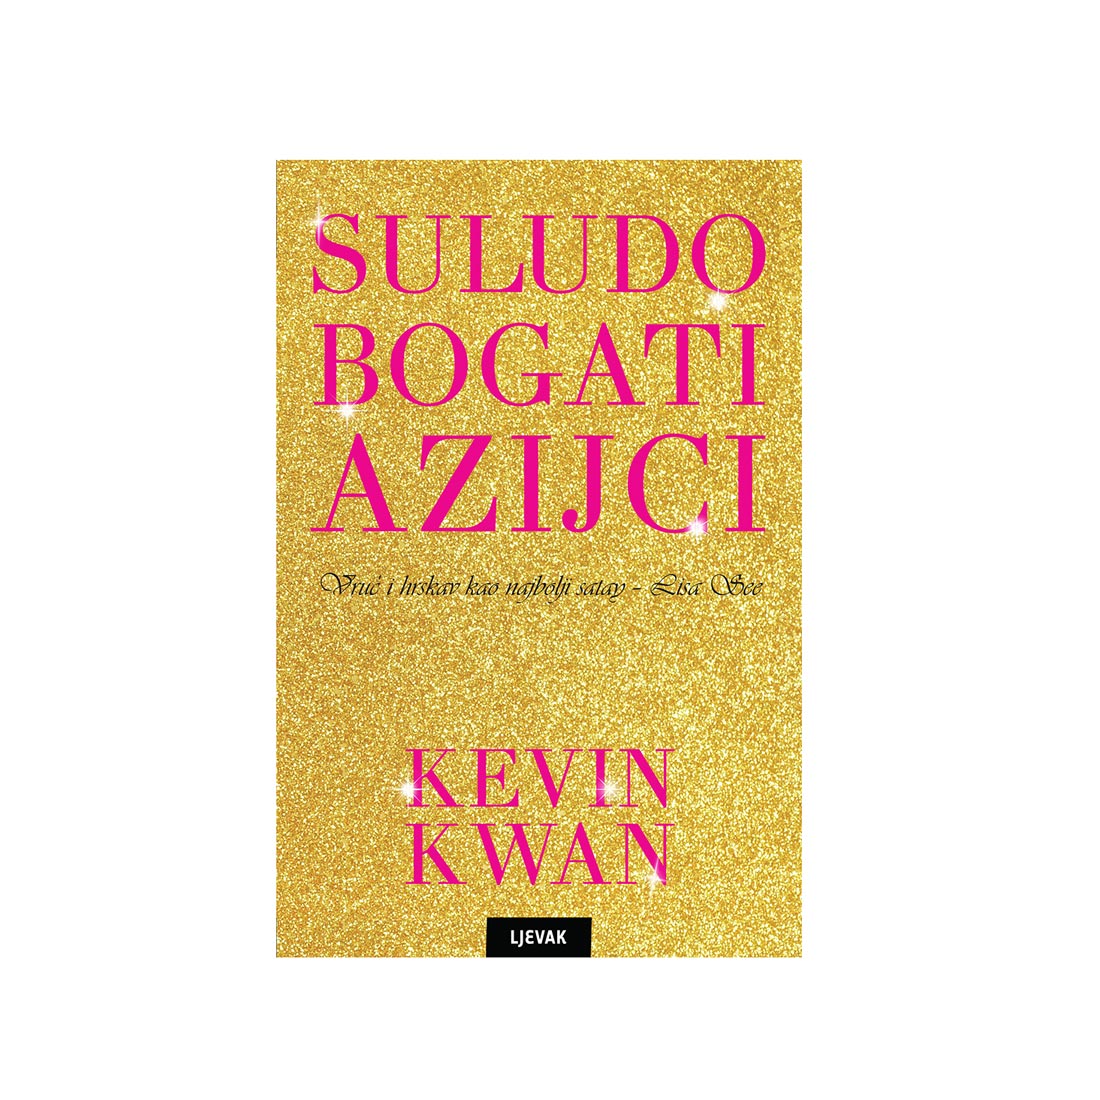 Suludo bogati Azijci, Kevin Kwan (Knjižara Ljevak)